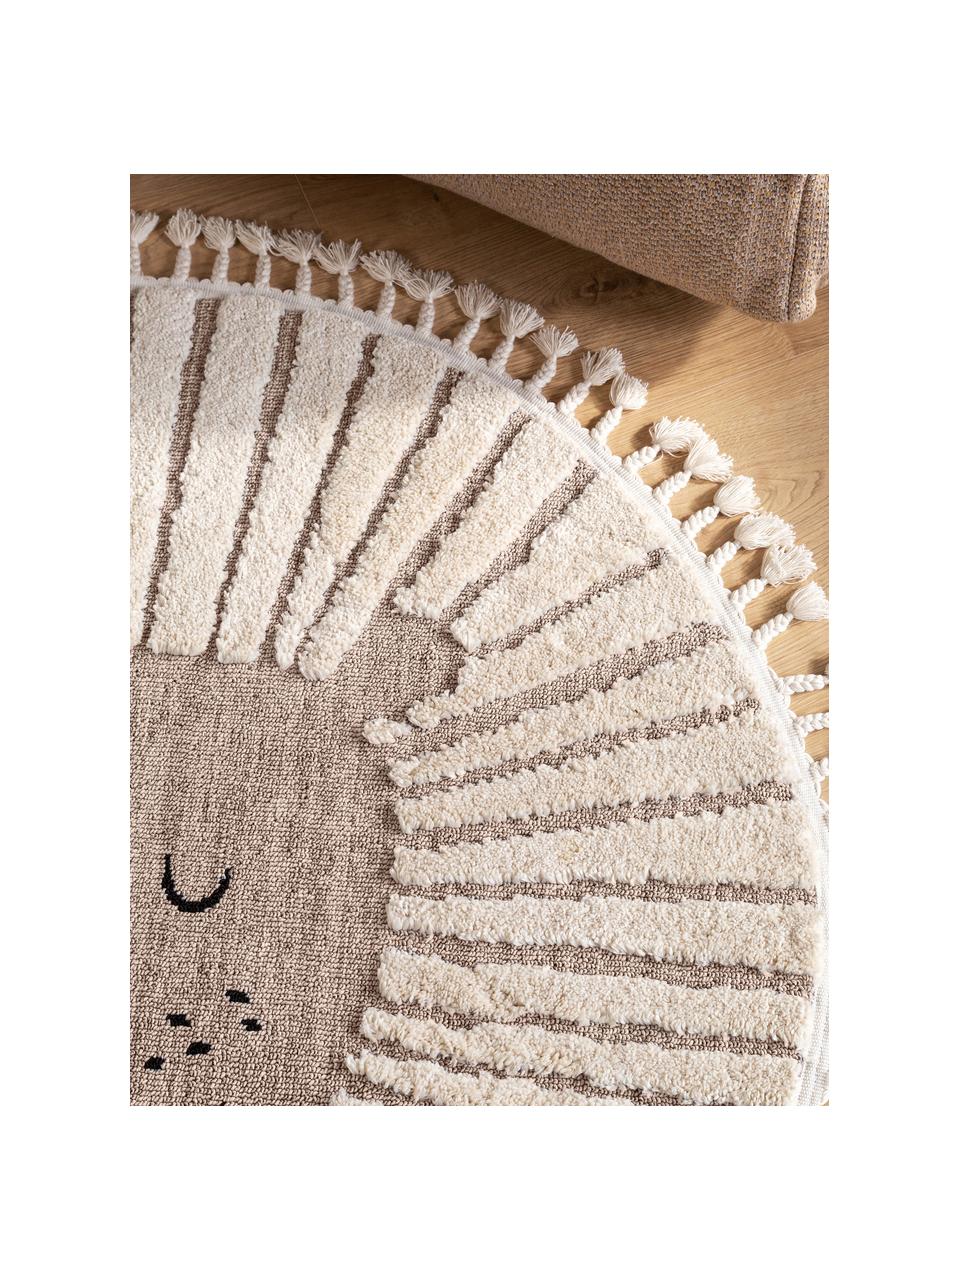 Kulatý dětský koberec se střapci a různou výškou povrchu Momo, 100 % polyester, Odstíny béžové, Ø 120 cm (velikost S)